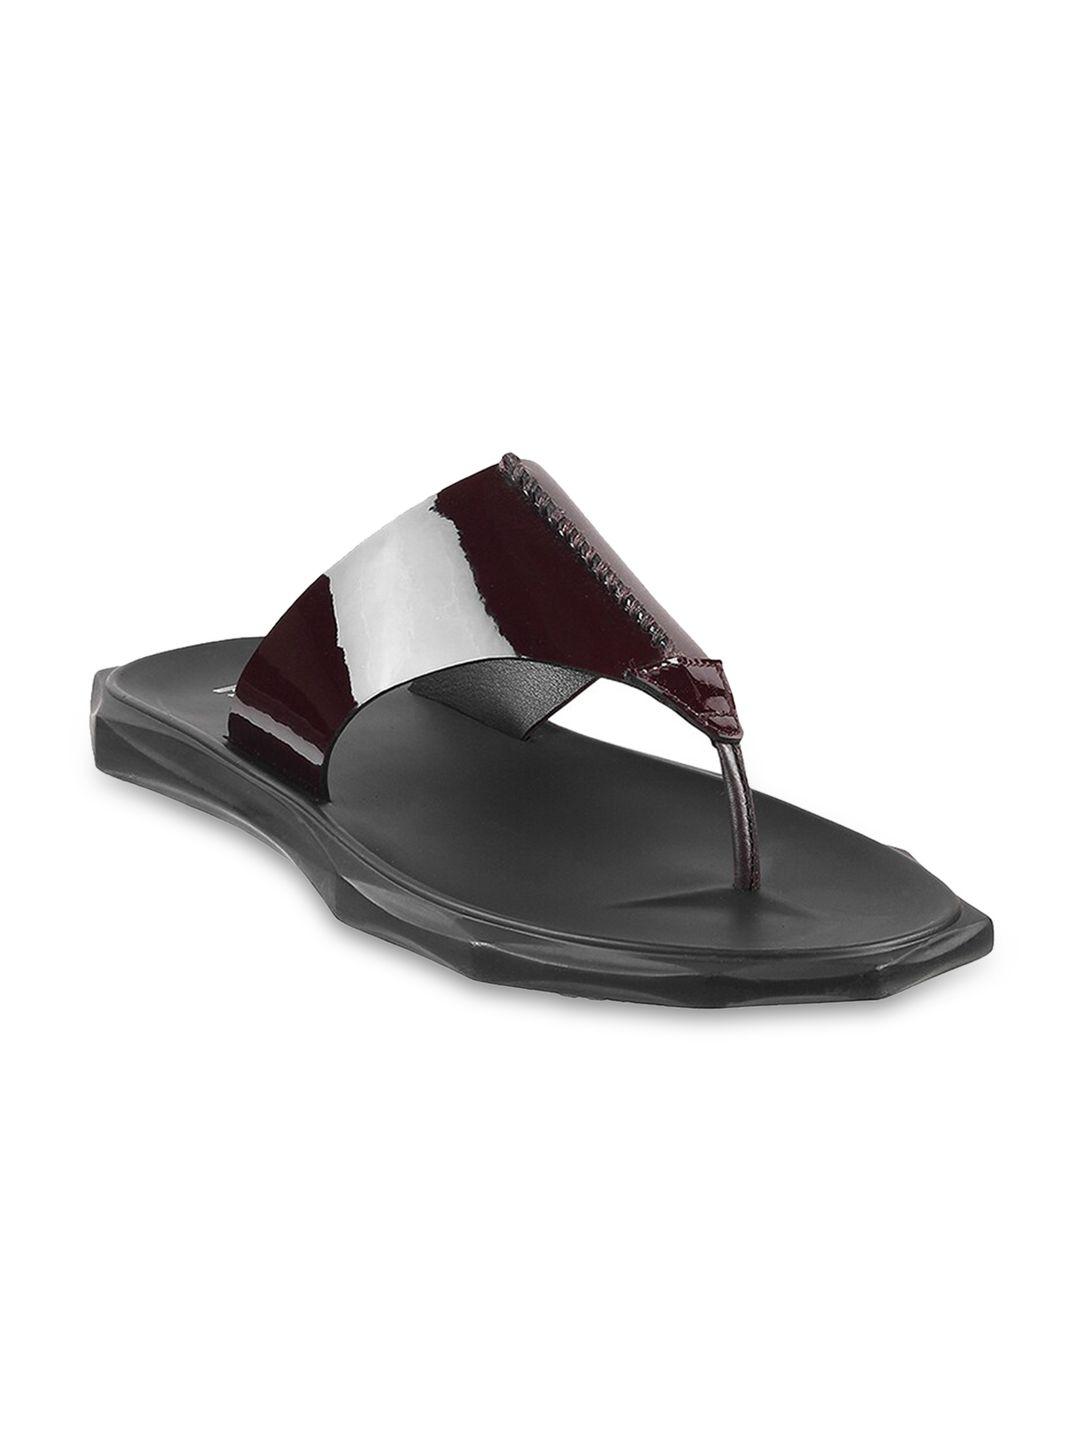 mochi men open toe comfort sandals